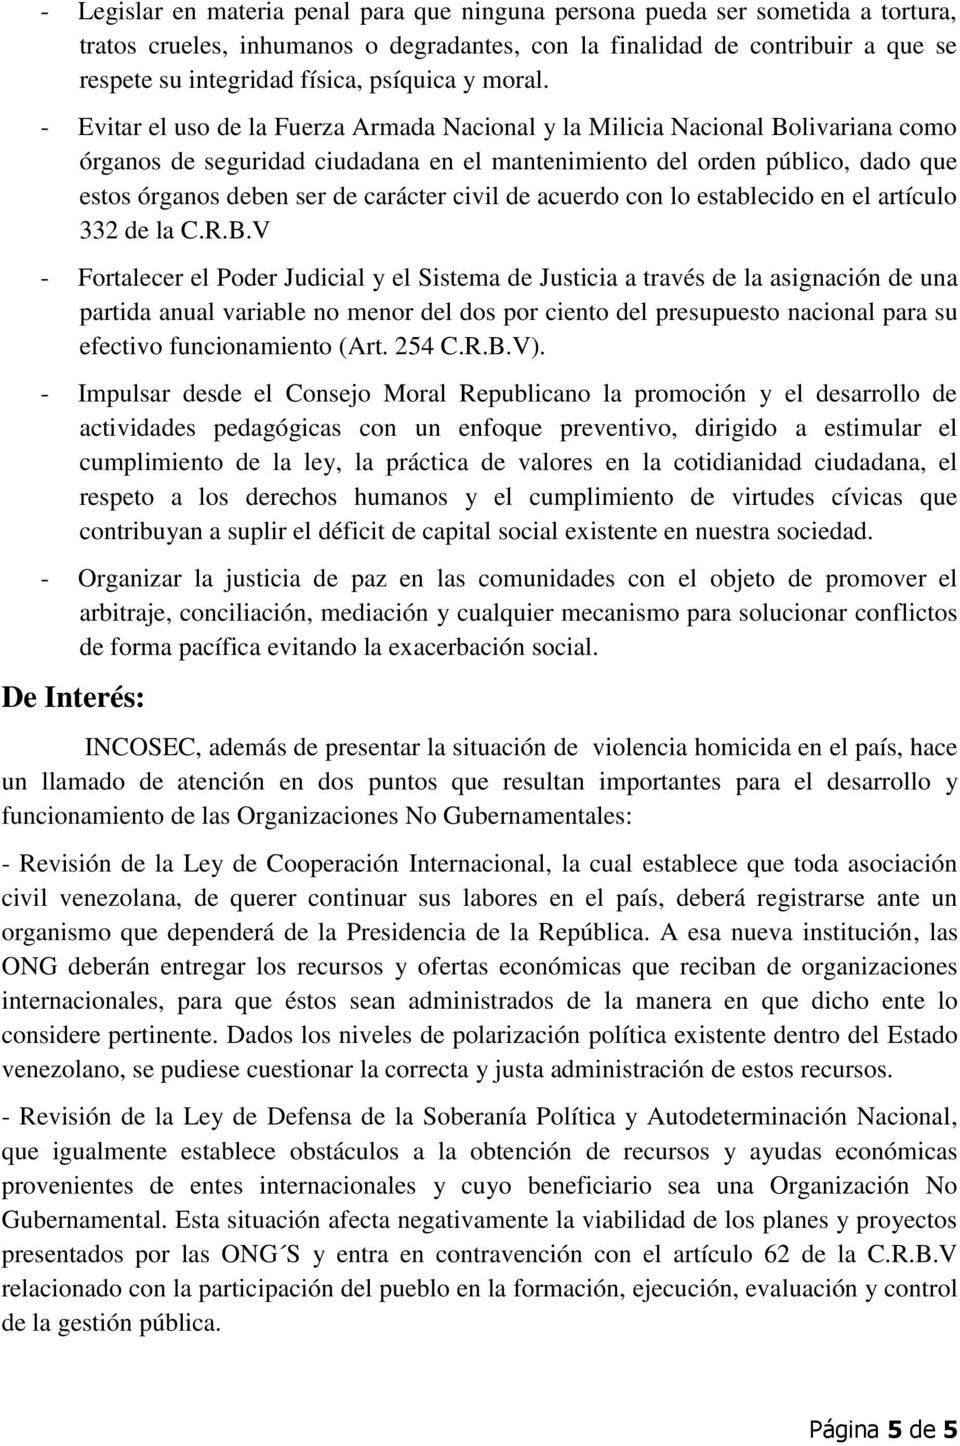 - Evitar el uso de la Fuerza Armada Nacional y la Milicia Nacional Bolivariana como órganos de seguridad ciudadana en el mantenimiento del orden público, dado que estos órganos deben ser de carácter